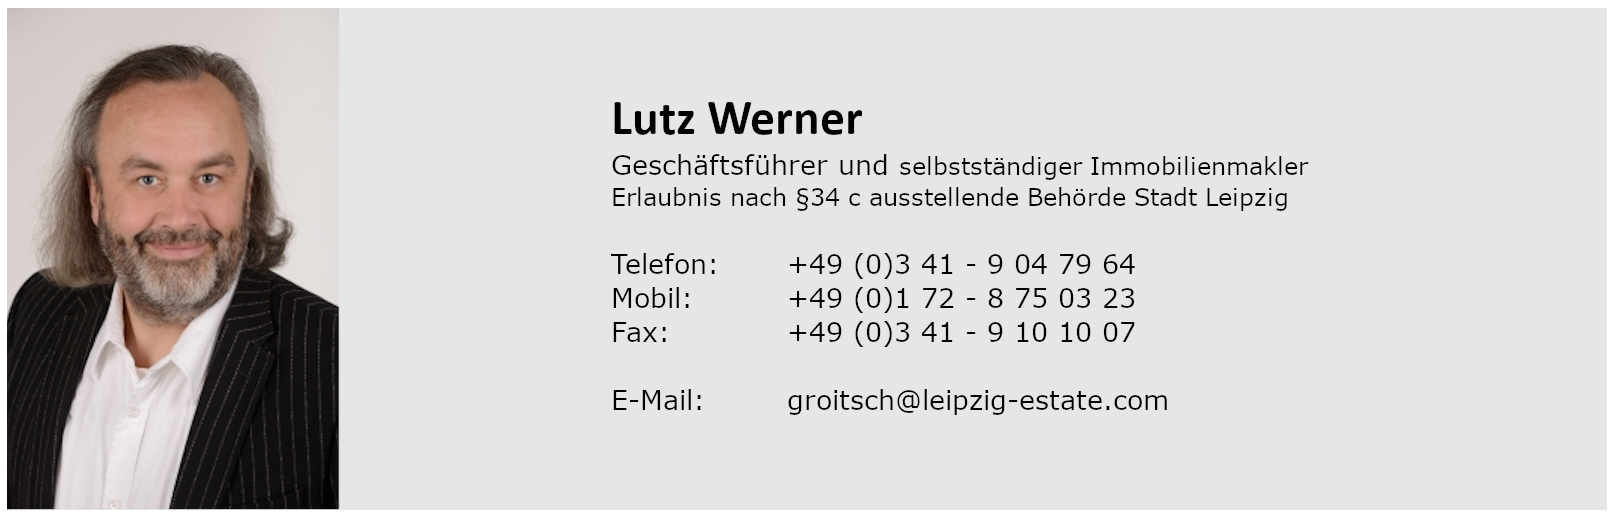 leipzig-estate-Lutz-Werner